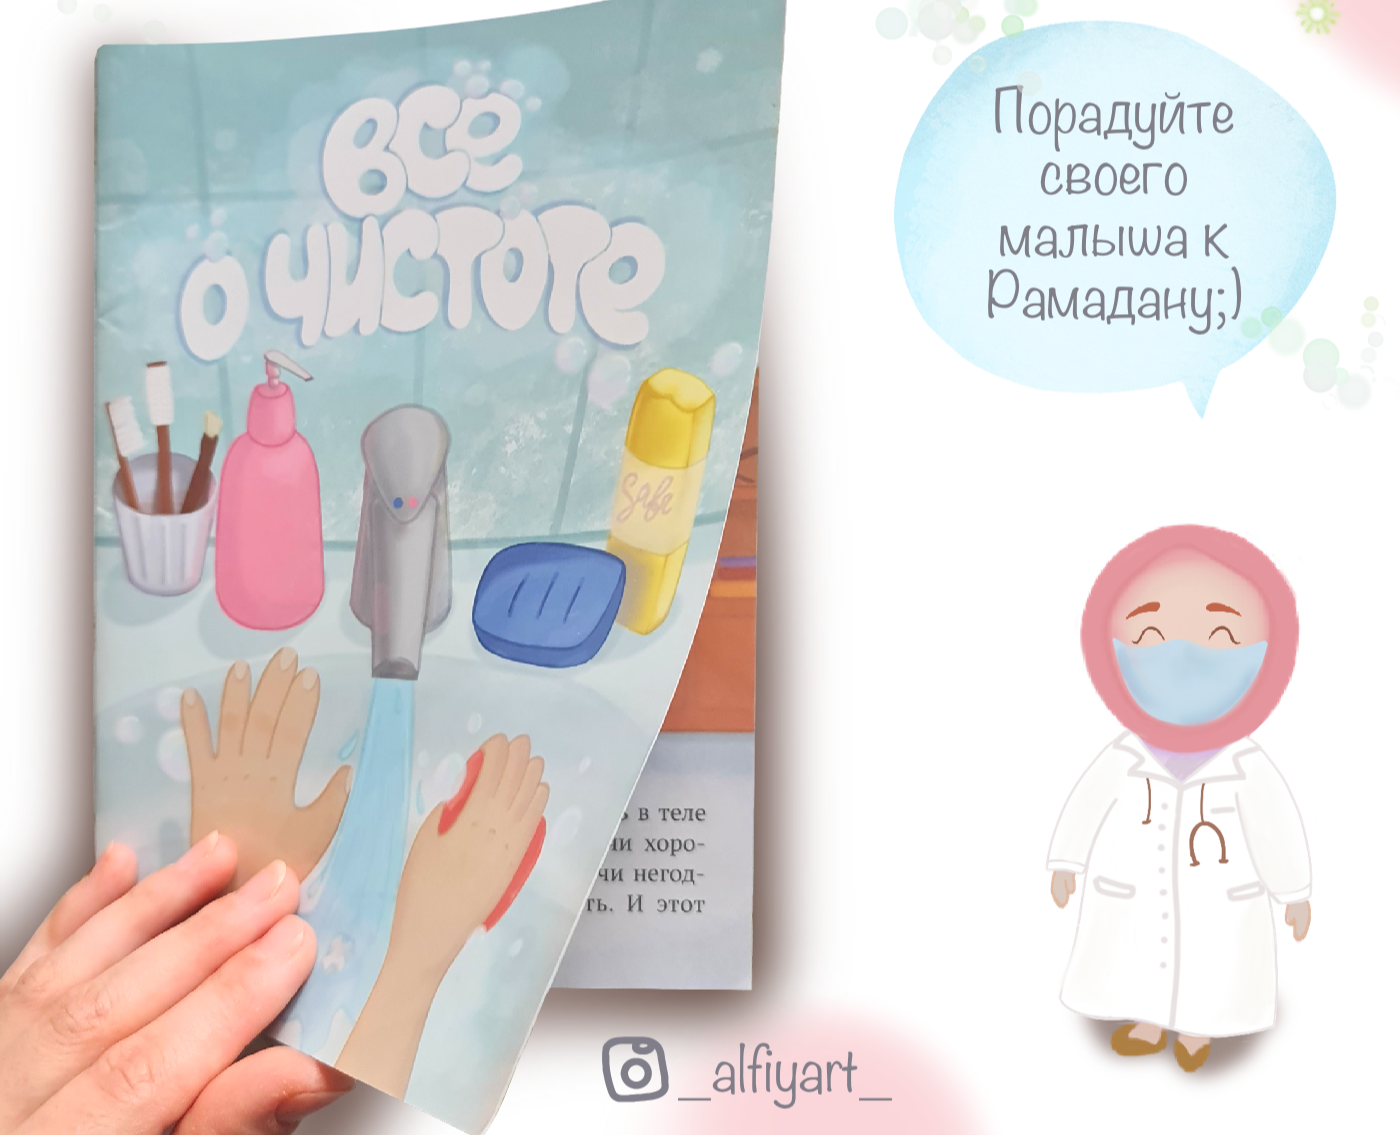 Иллюстрации к книге о чистоте — Иллюстрация на Dprofile